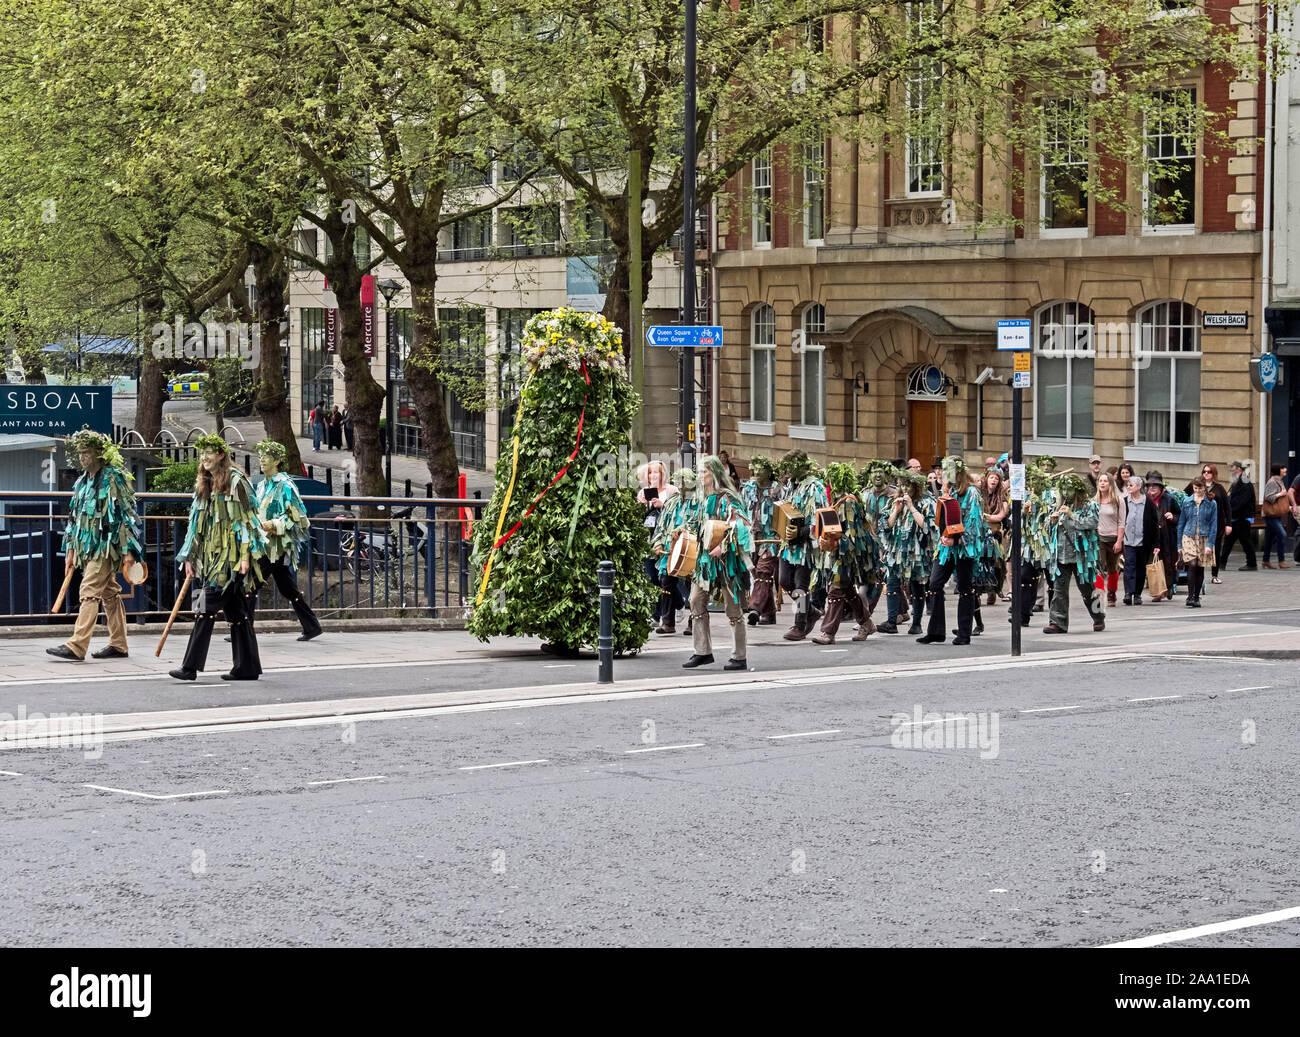 Jack in verde e i suoi servi sfilano per le strade di Bristol, UK per celebrare il giorno di maggio. Questo apparentemente cerimonia pagana infatti nacque agli inizi del periodo moderno. Foto Stock